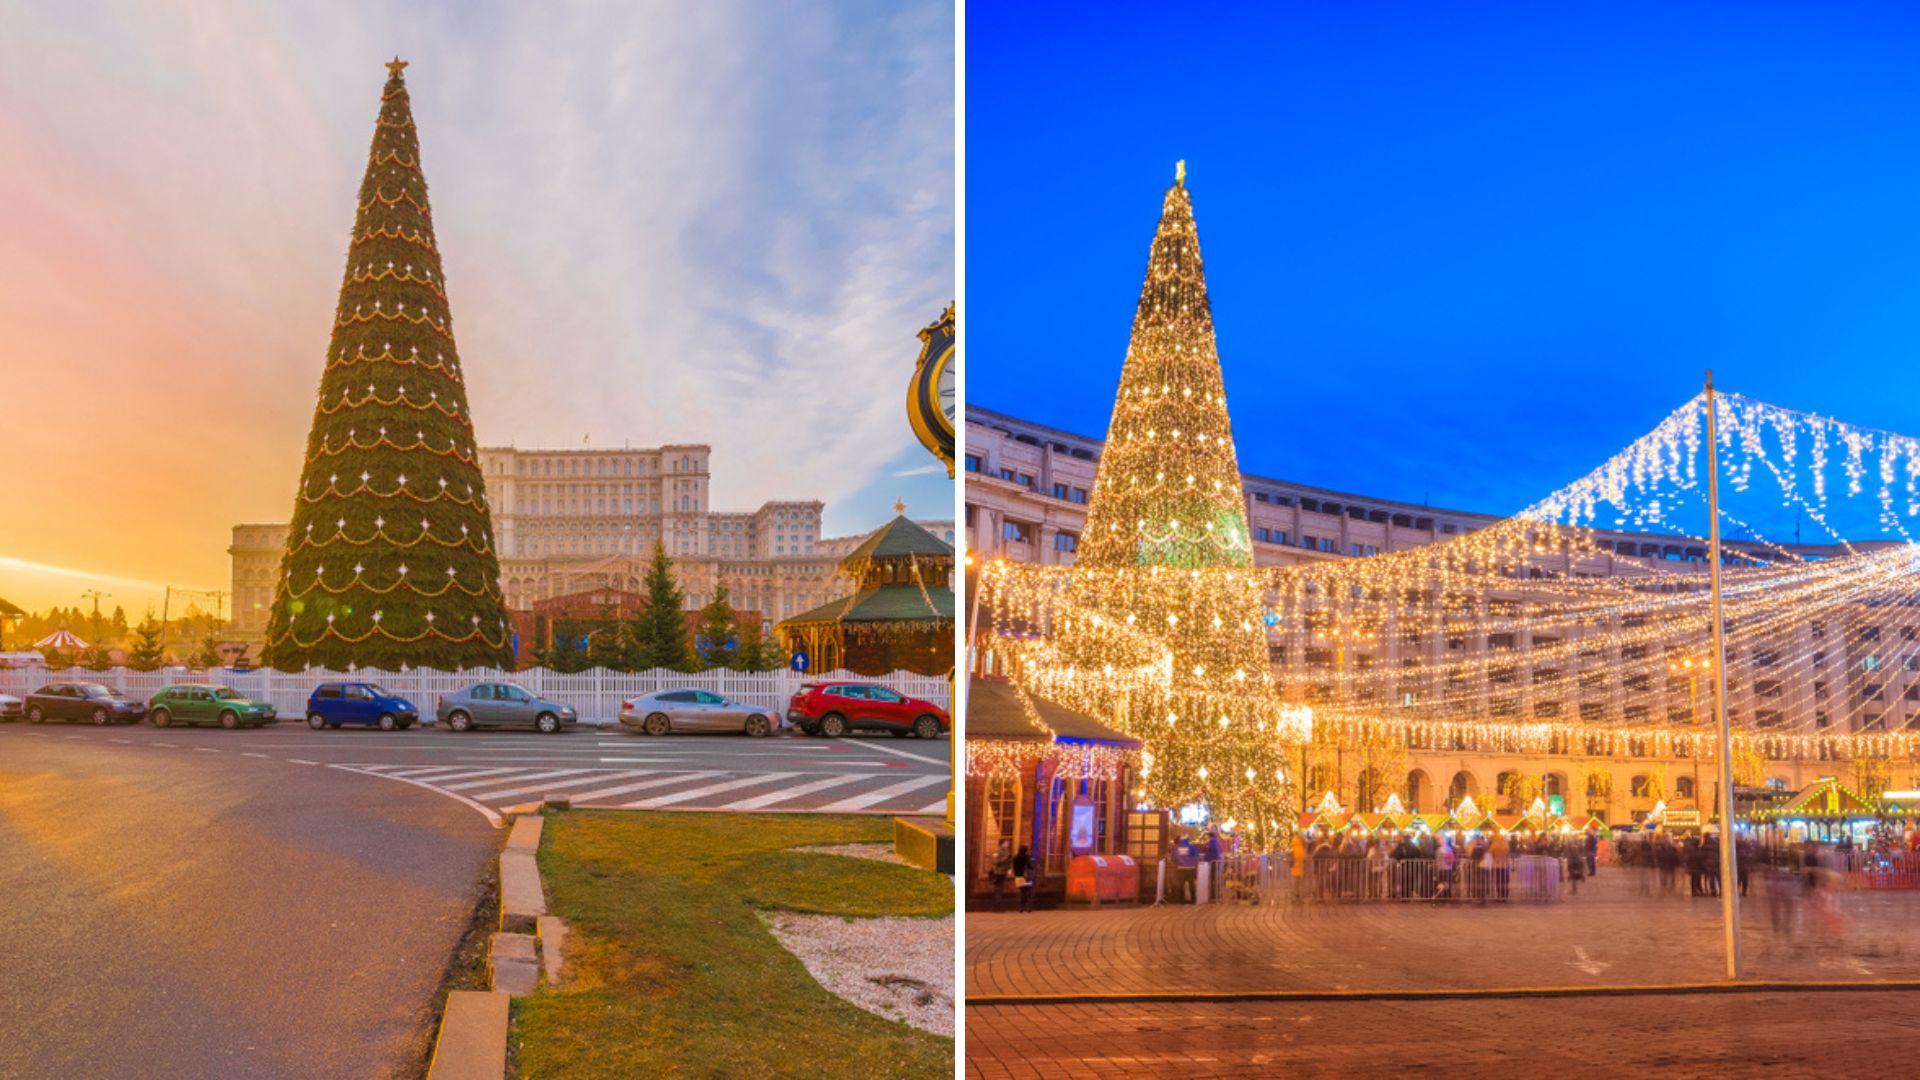 Târgul de Crăciun din Capitală se va deschide începând cu 20 noiembrie. Cum se va face accesul vizitatorilor în acest an